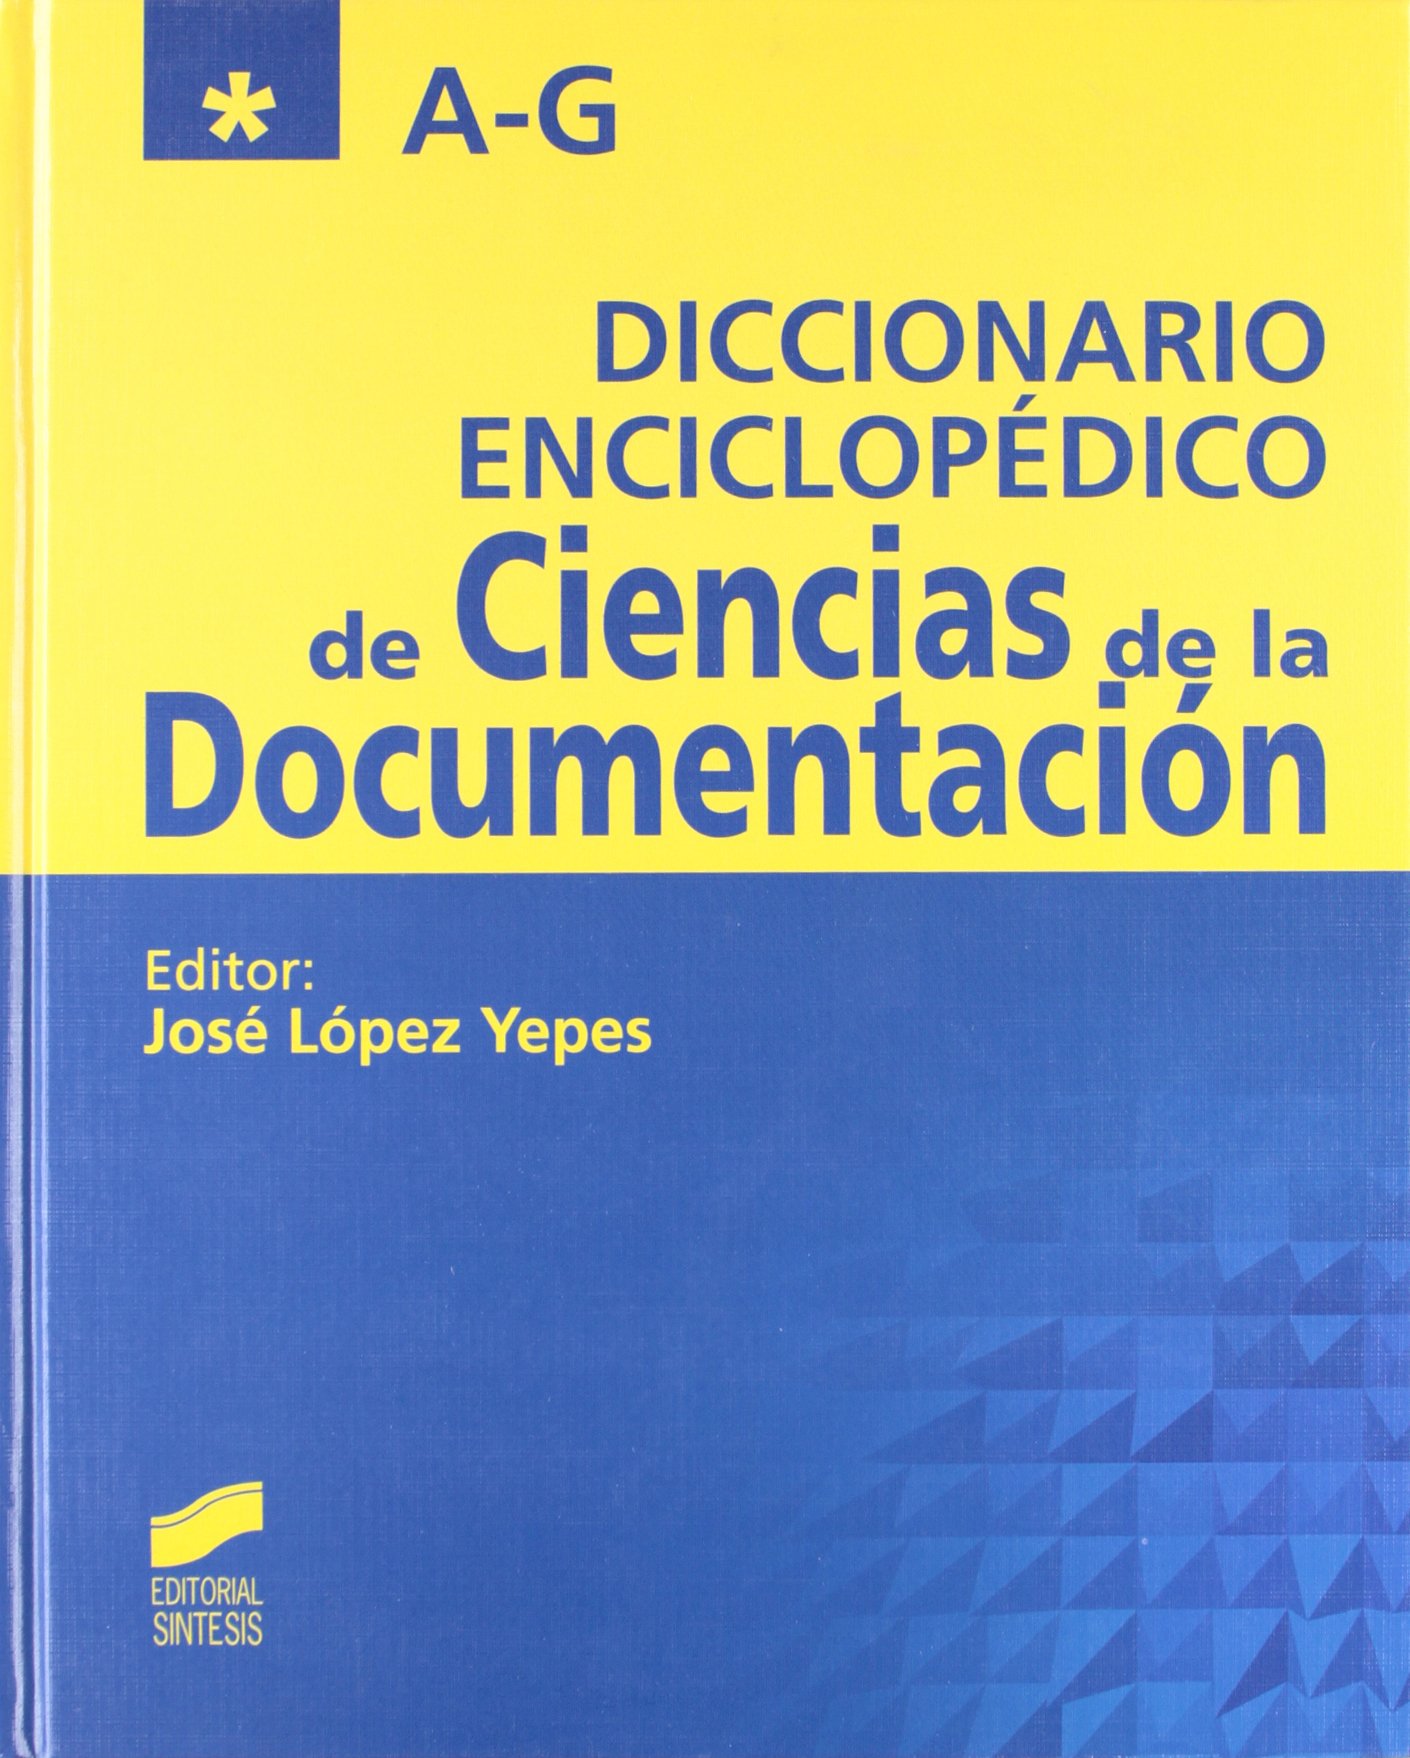 Imagen de portada del libro Diccionario enciclopédico de ciencias de la documentación